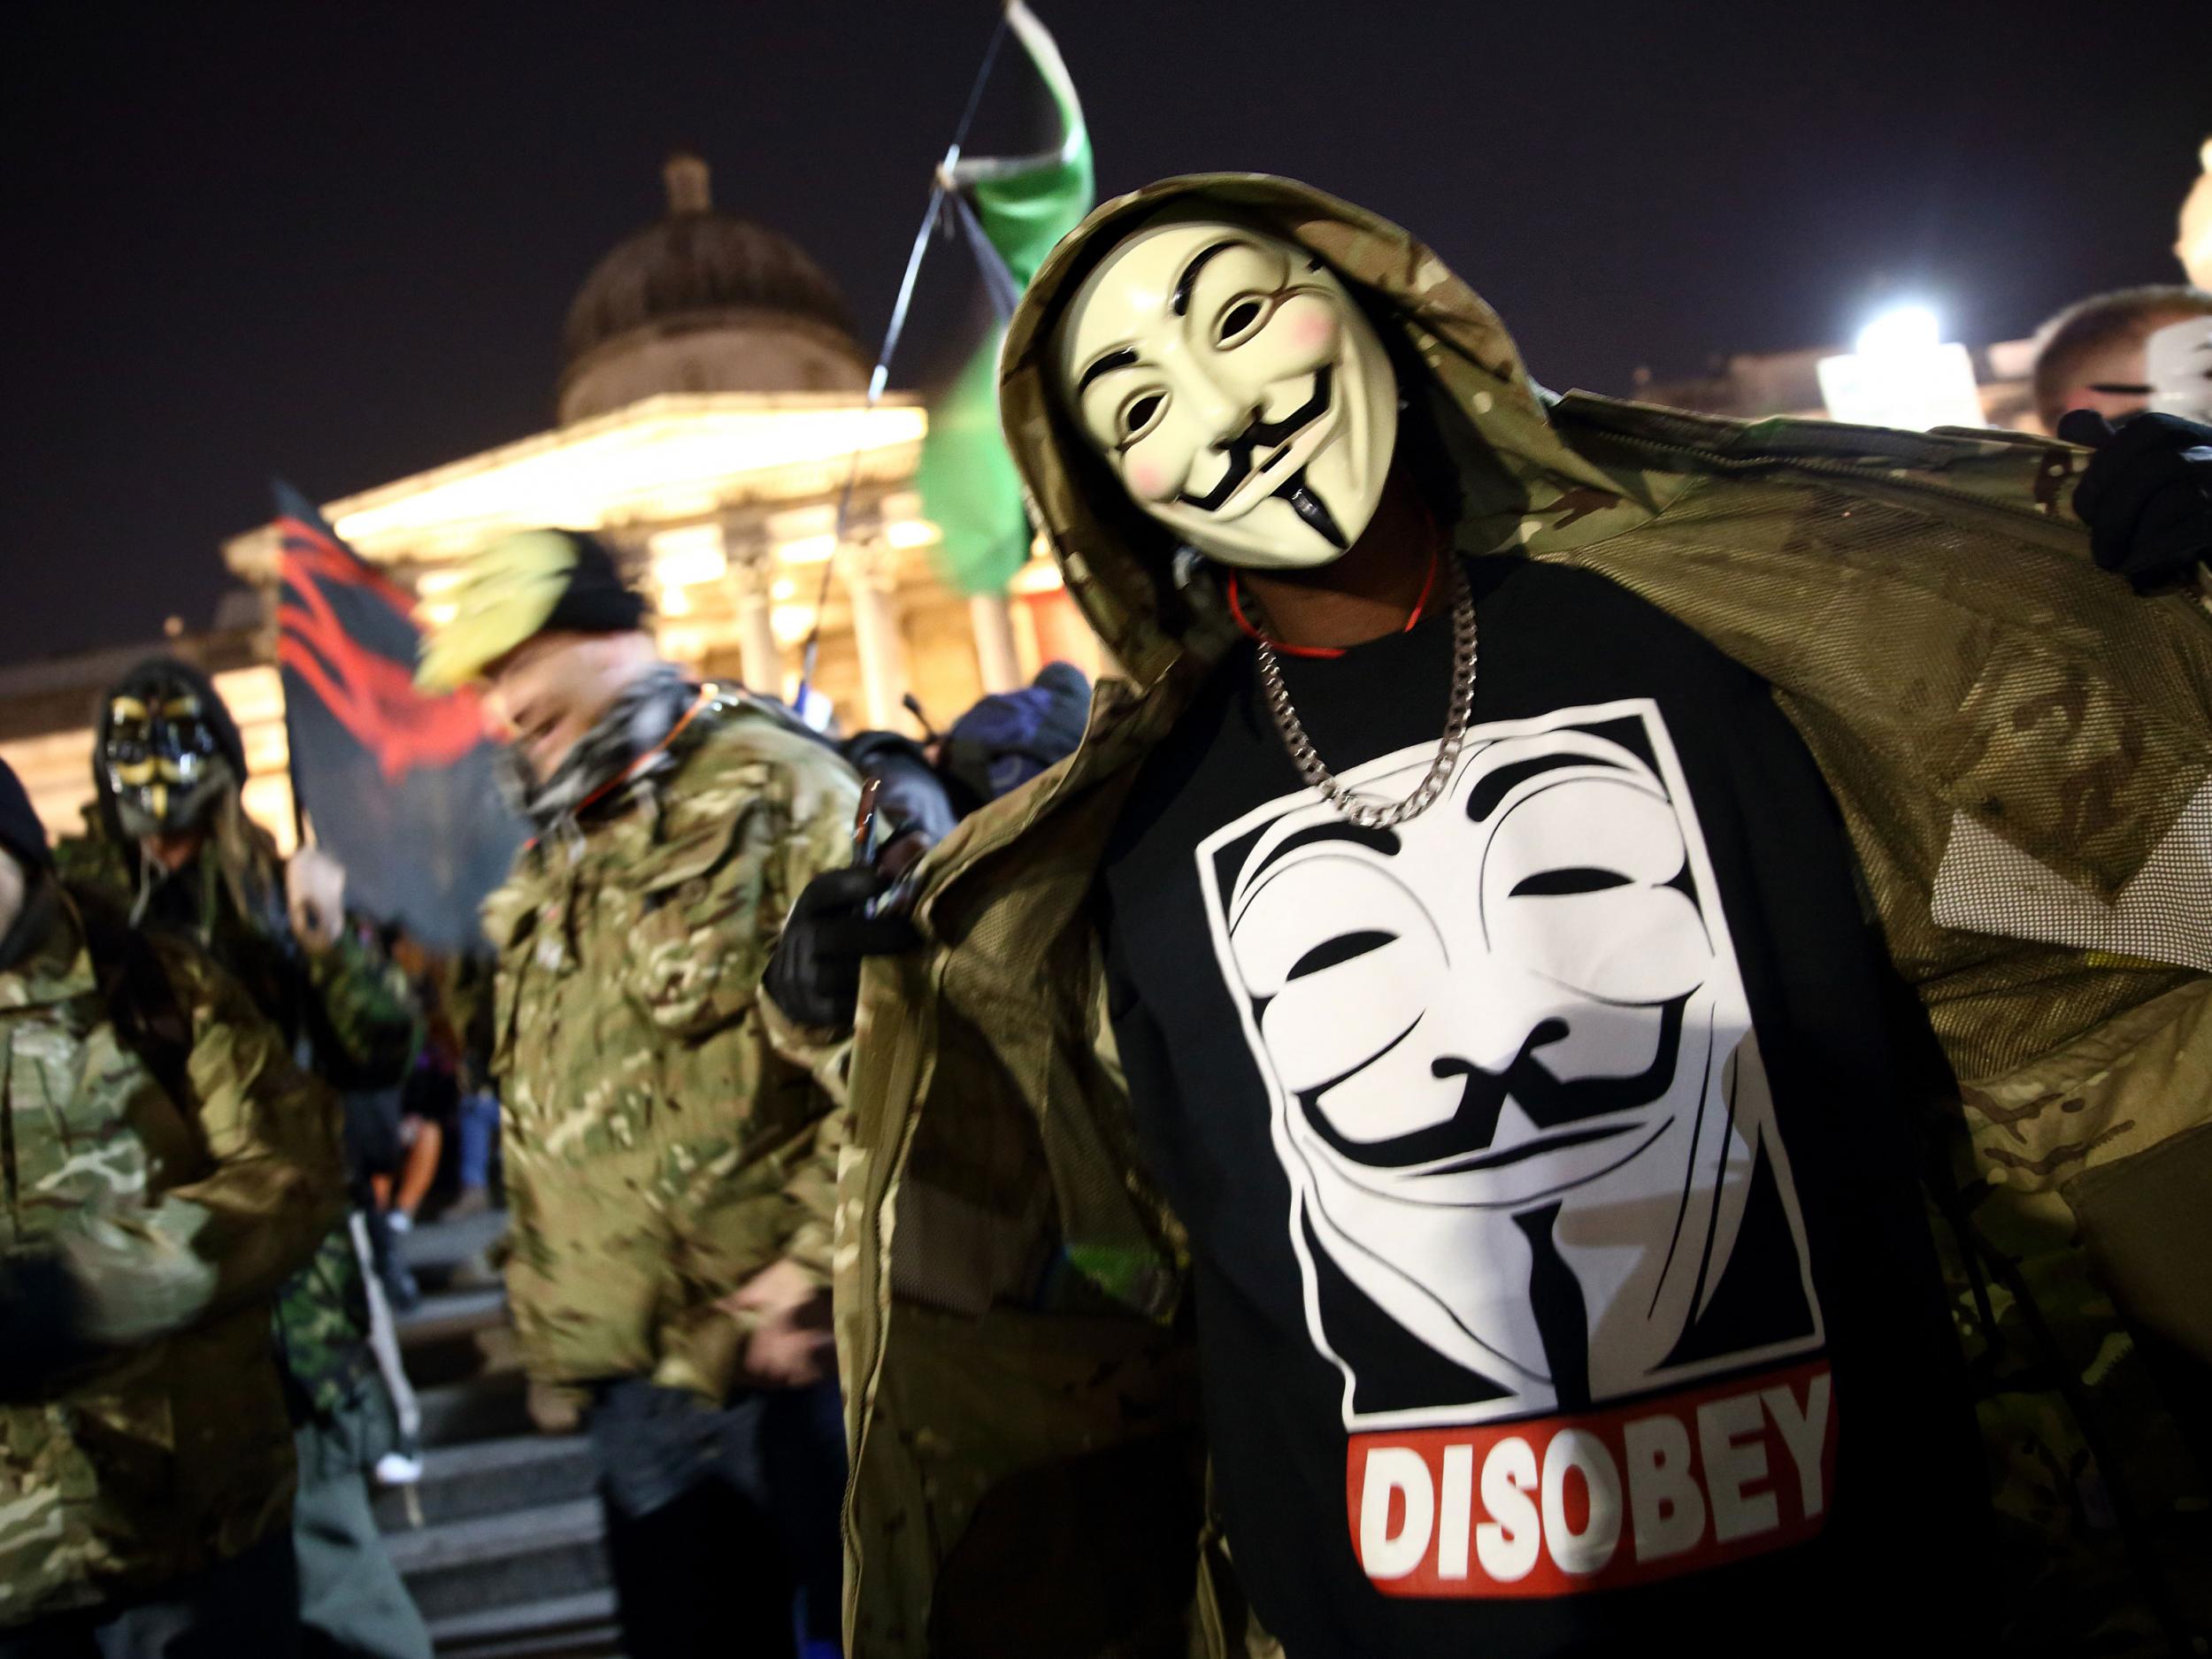 Где теперь будет проходить маска. Хактивисты anonymous. Полиция в маске Анонимуса. Анонимус в камуфляже. Анонимусы маршируют.